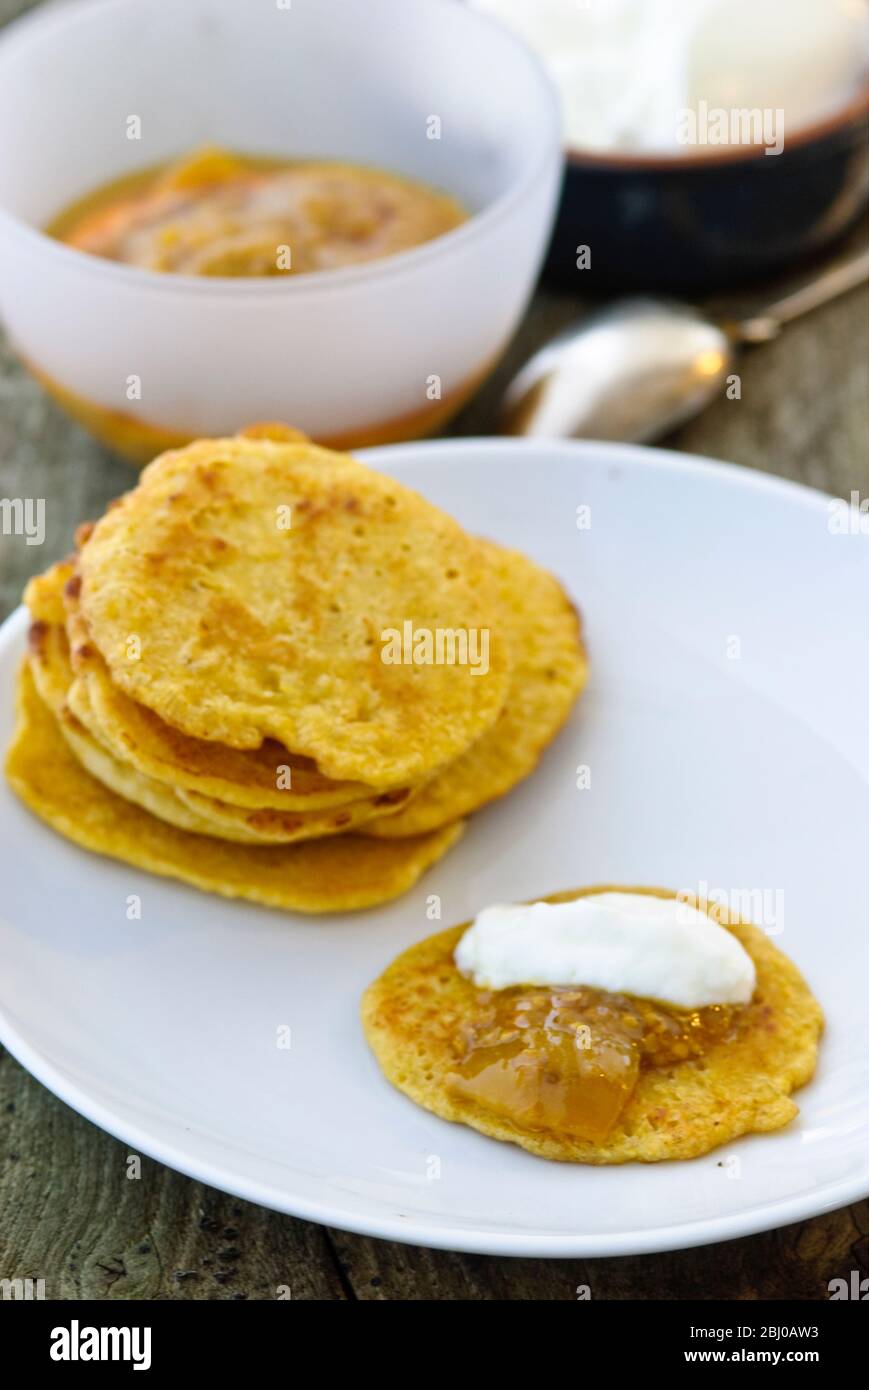 Kleine Pfannkuchen aus indischem Kichererbsenmehl (Chana dal), glutenfrei und sehr nahrhaft. Serviert mit Limettenchutney und Joghurt - Stockfoto